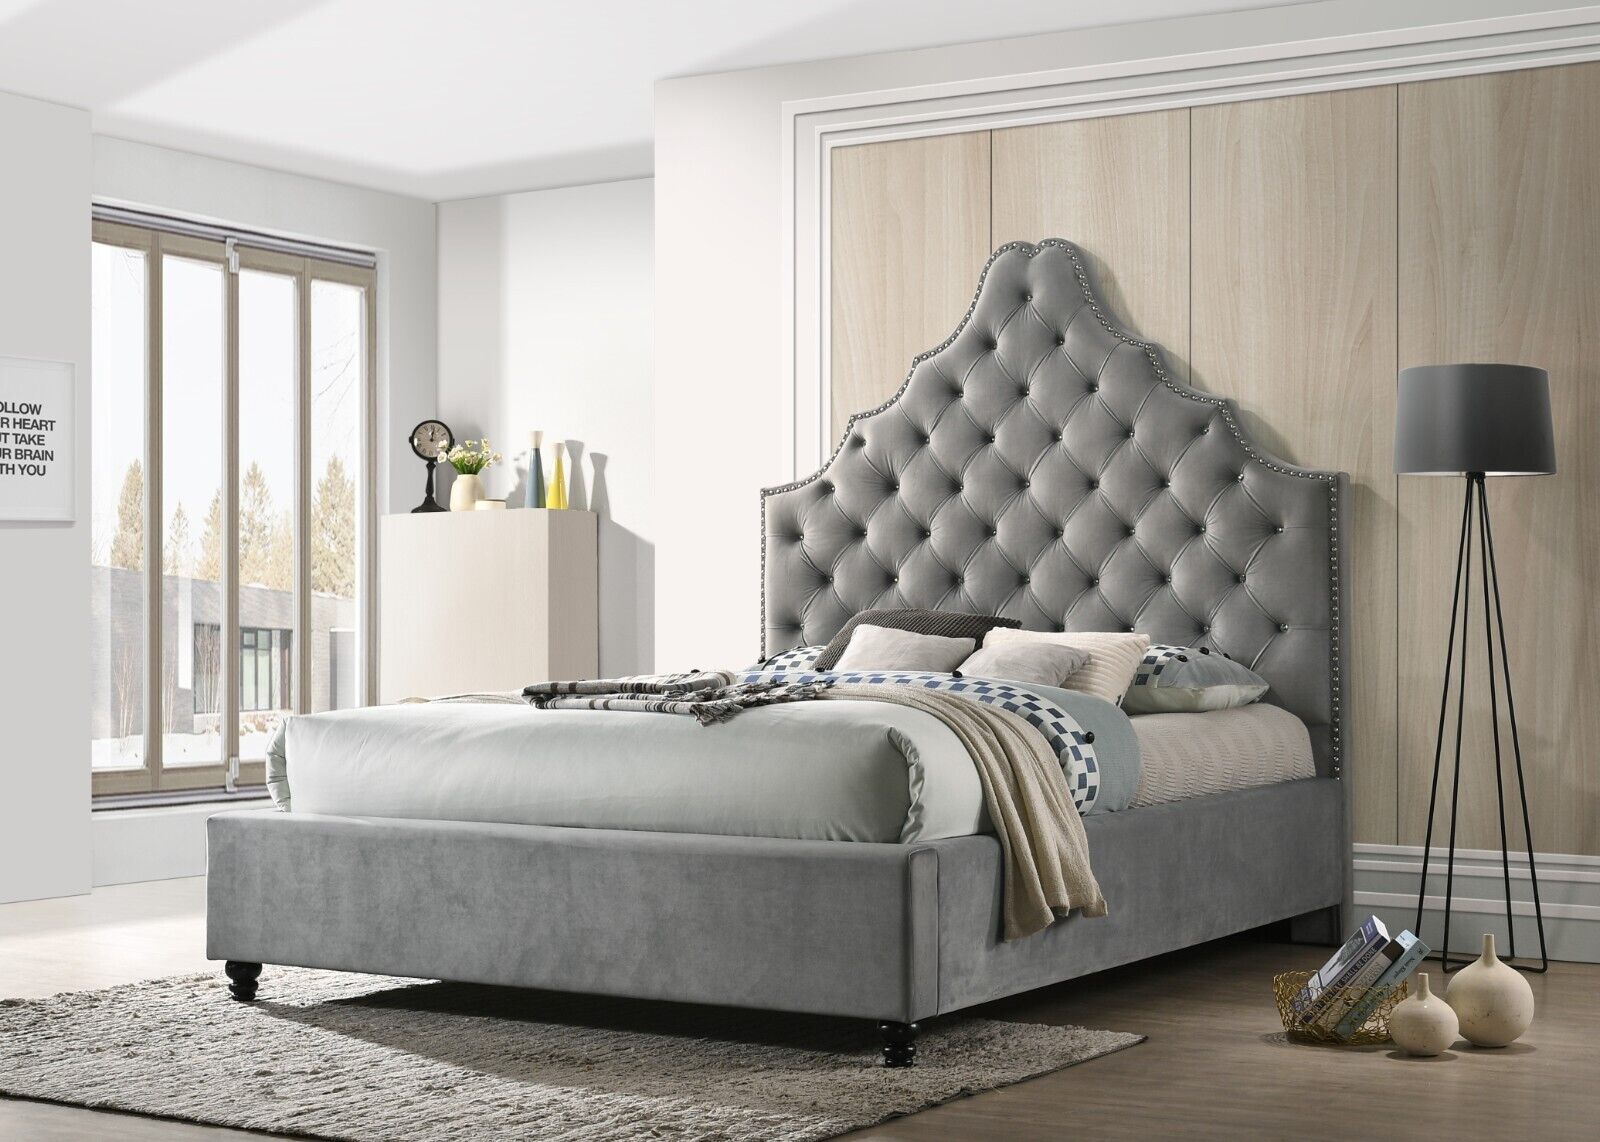 Esofastore Velvet Upholstered California King Bed, Crystal Tufted Unique Headboard Design Platform Bed, Bedroom Furniture Home Décor, Gray